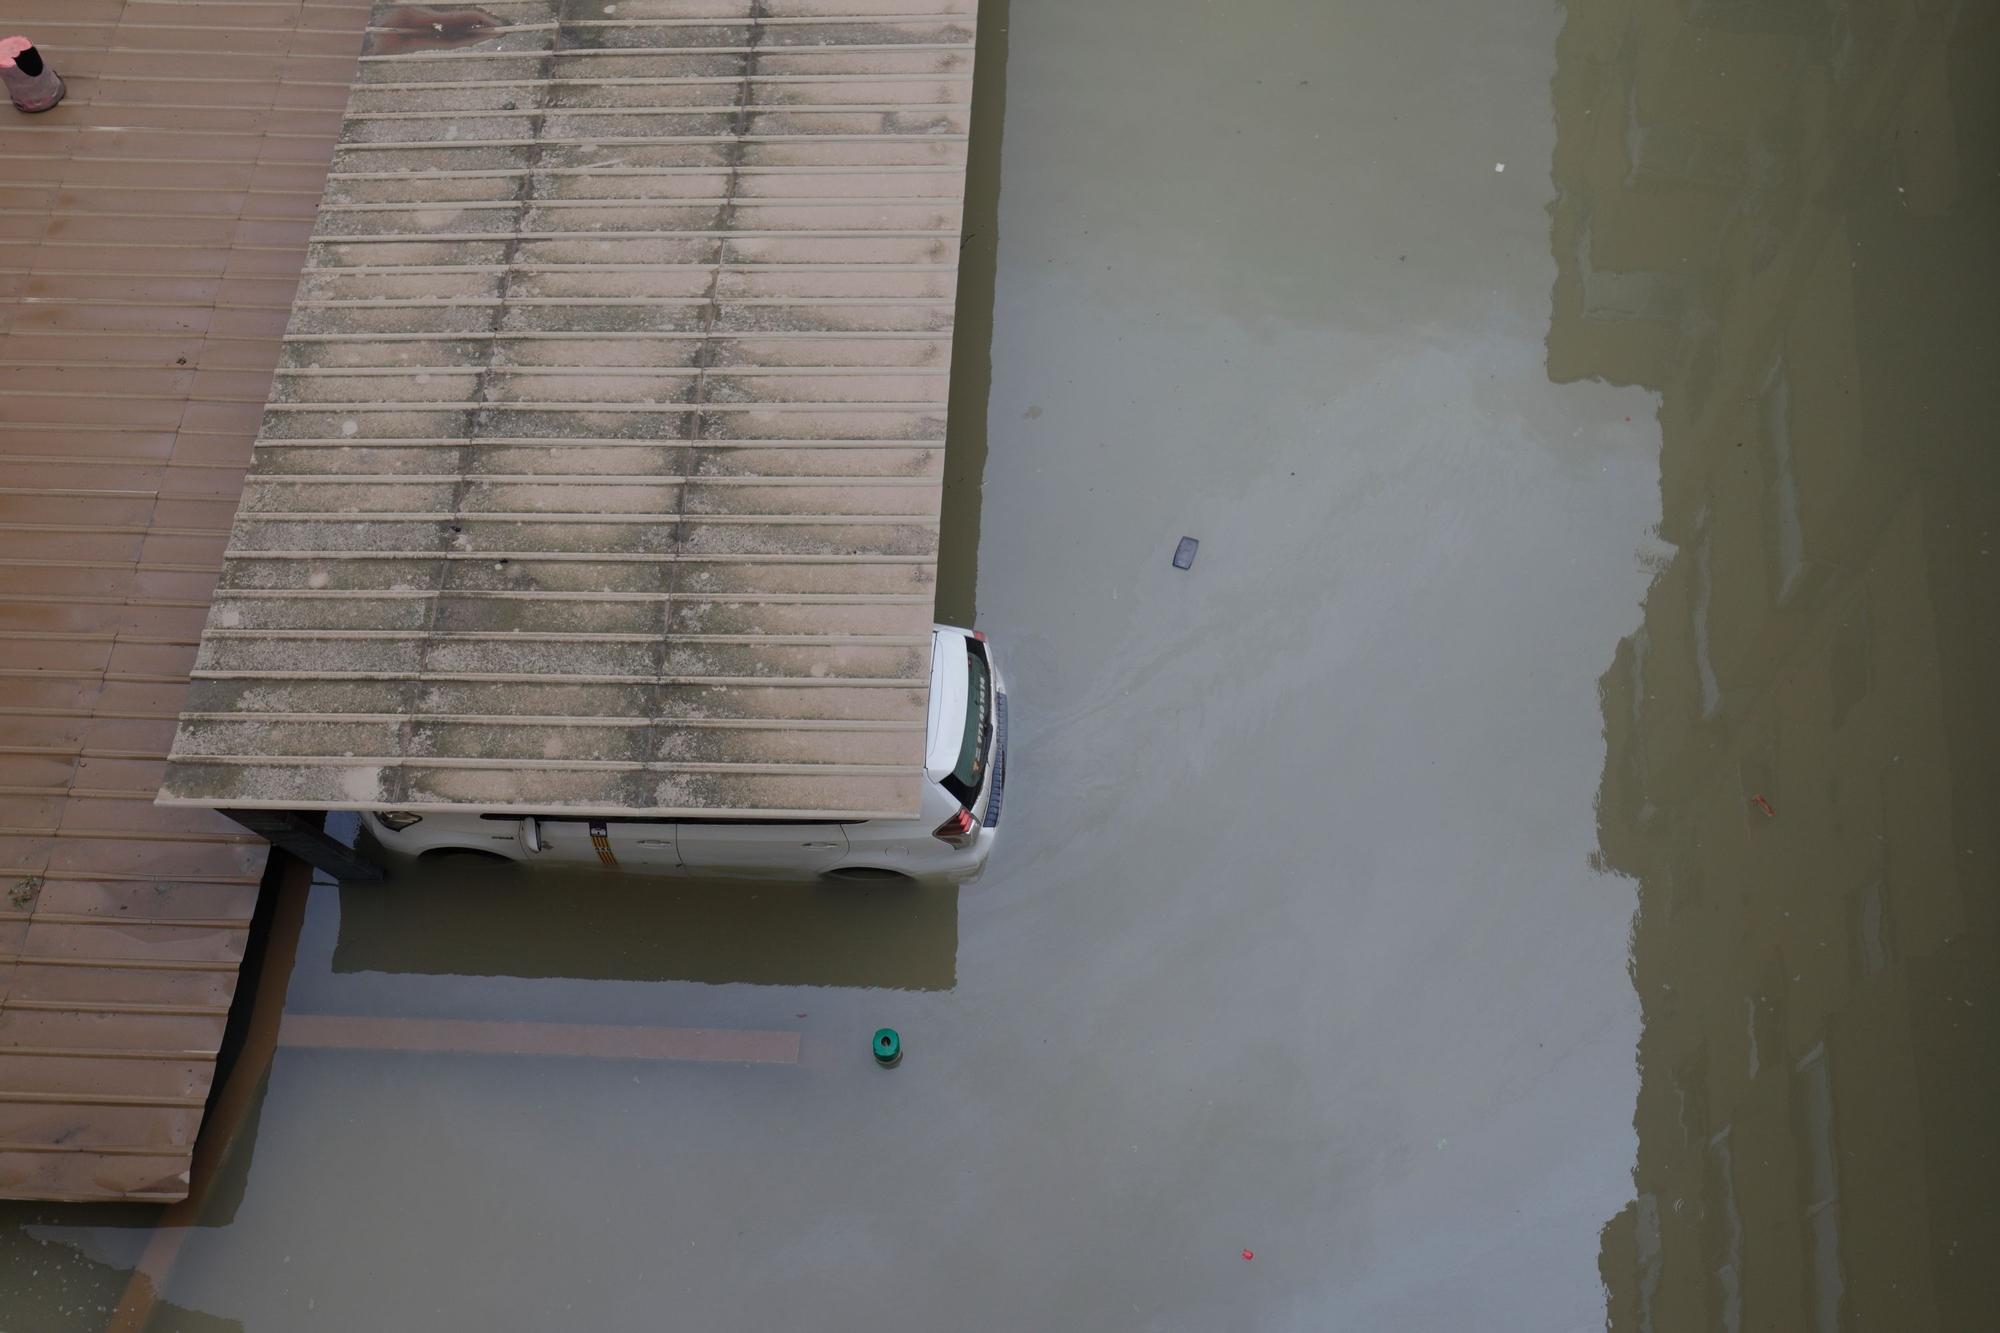 Rohrbruch in Pont d'Inca auf Mallorca setzt Dutzende Autos unter Wasser